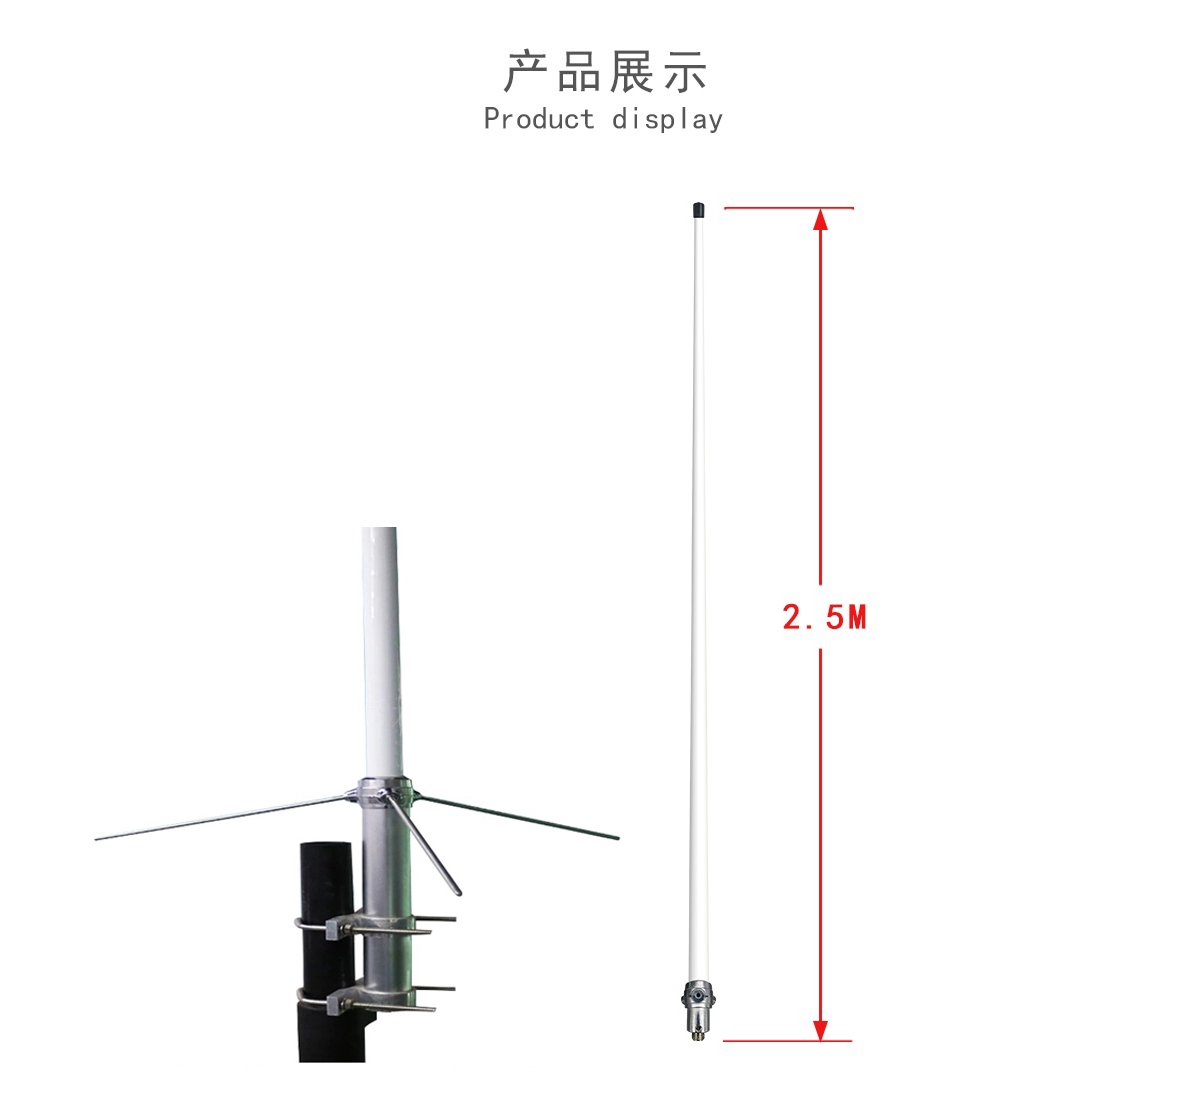 2.5 meter Fiberglass Base Station Antenna For Communication High Gain 144/430MHz VHF UHF